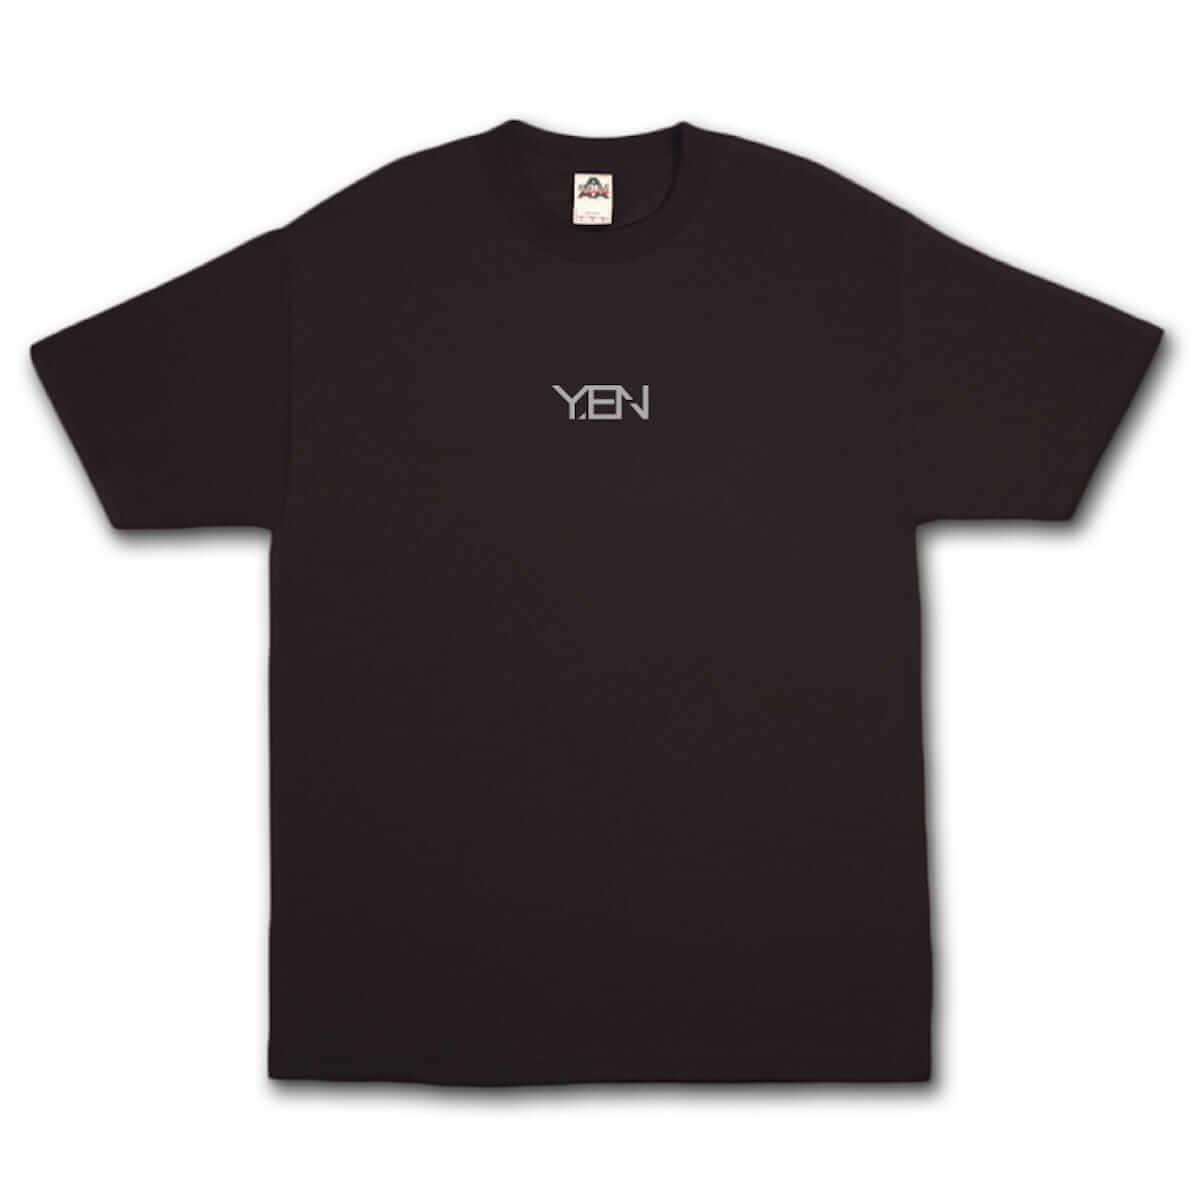 YENTOWNが大集合するイベント「YENJAMIN」の会場限定Tシャツのデザインが公開｜kzm『DIMENSION』とAwichの新曲のリリパに music180714-yanjamin-4-1200x1200